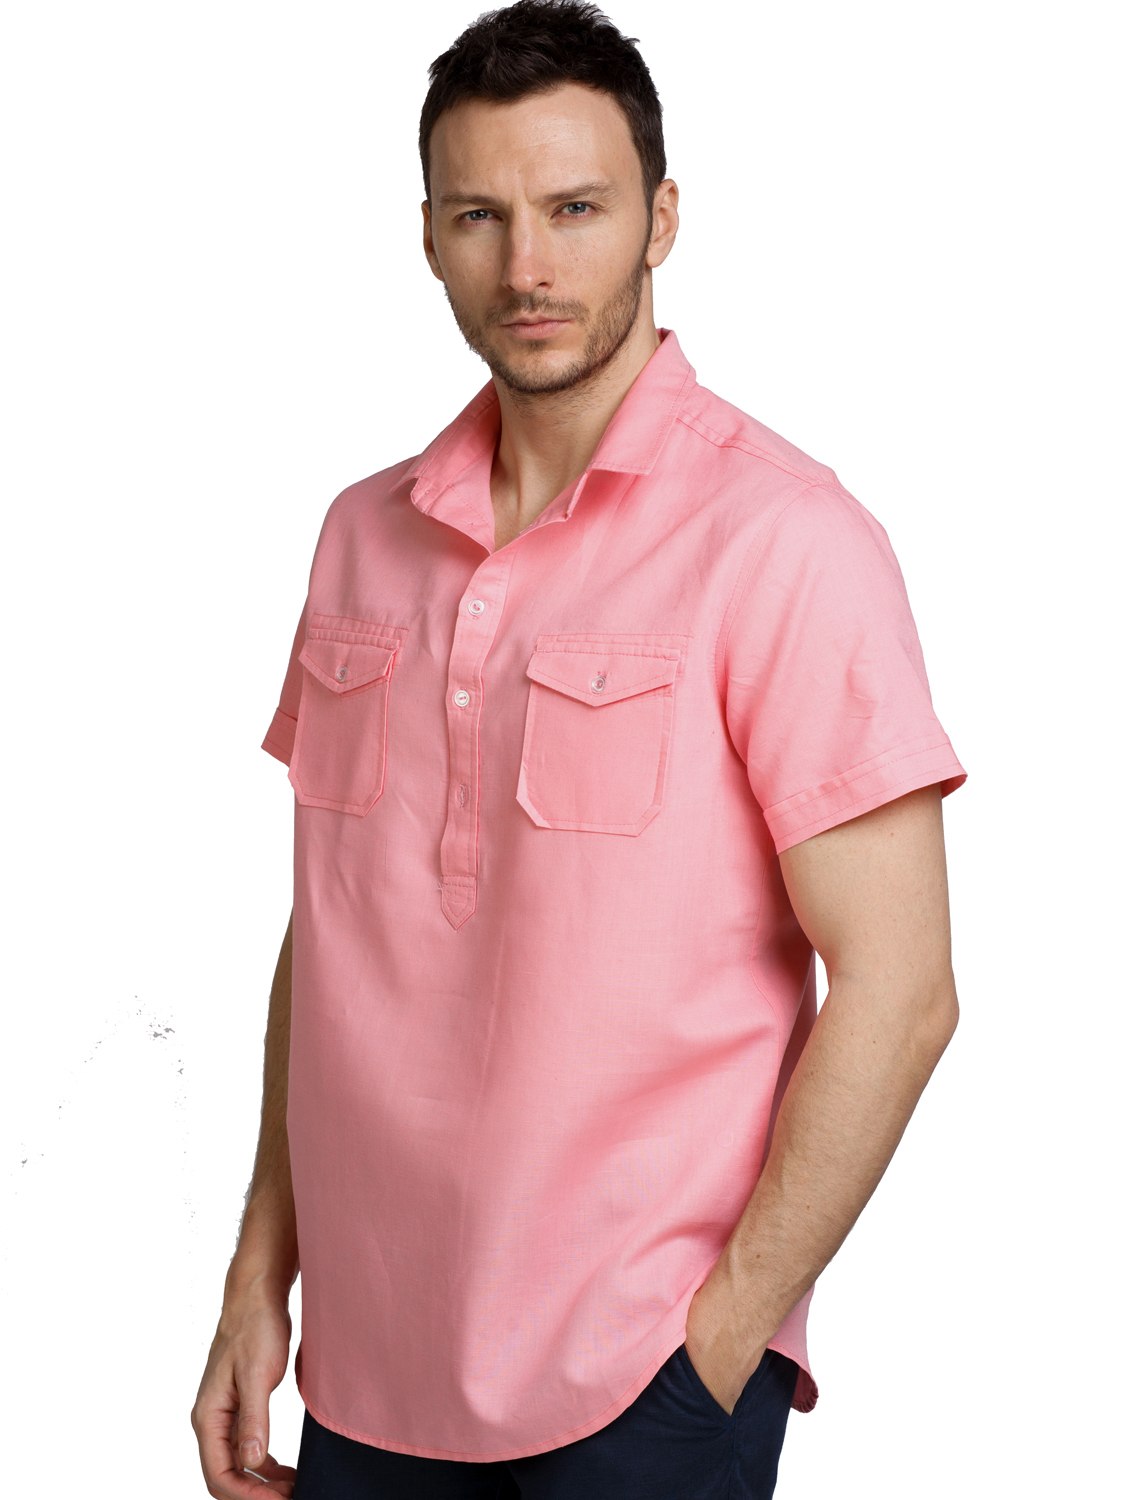 Купить летнюю рубашку мужскую с коротким рукавом. Розовая рубашка мужская. Летняя рубашка. Розовая рубашка мужская с коротким рукавом. Льняная рубашка с коротким рукавом.